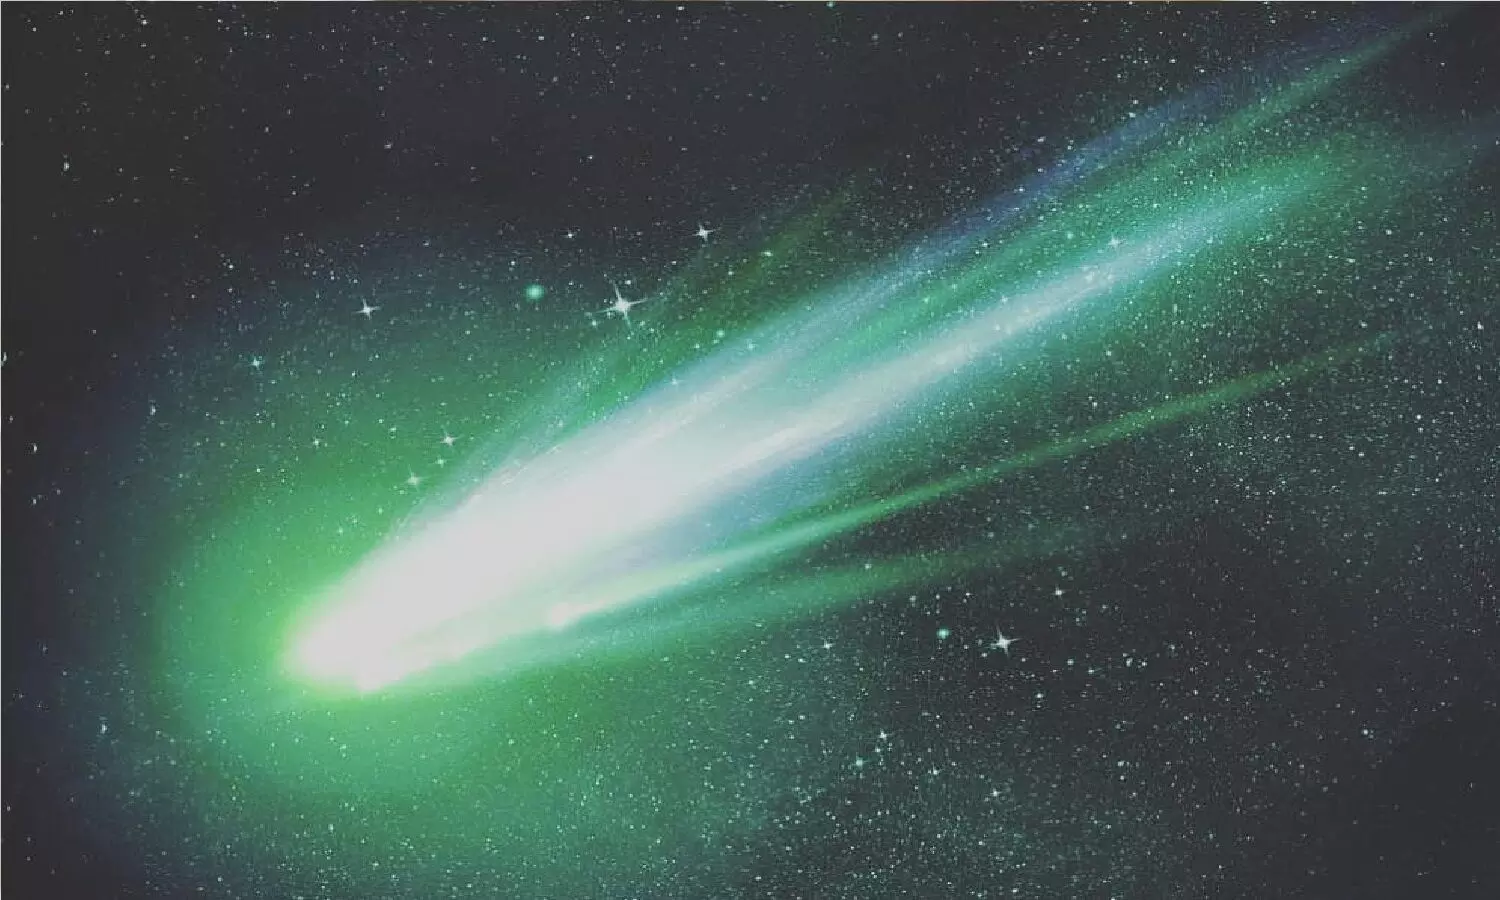 आज रात आसमान में दिखेगा Green Comet जो 50,000 साल पहले दिखा था, ग्रीन कॉमेट का नजारा कैसे मिलेगा जान लीजिये